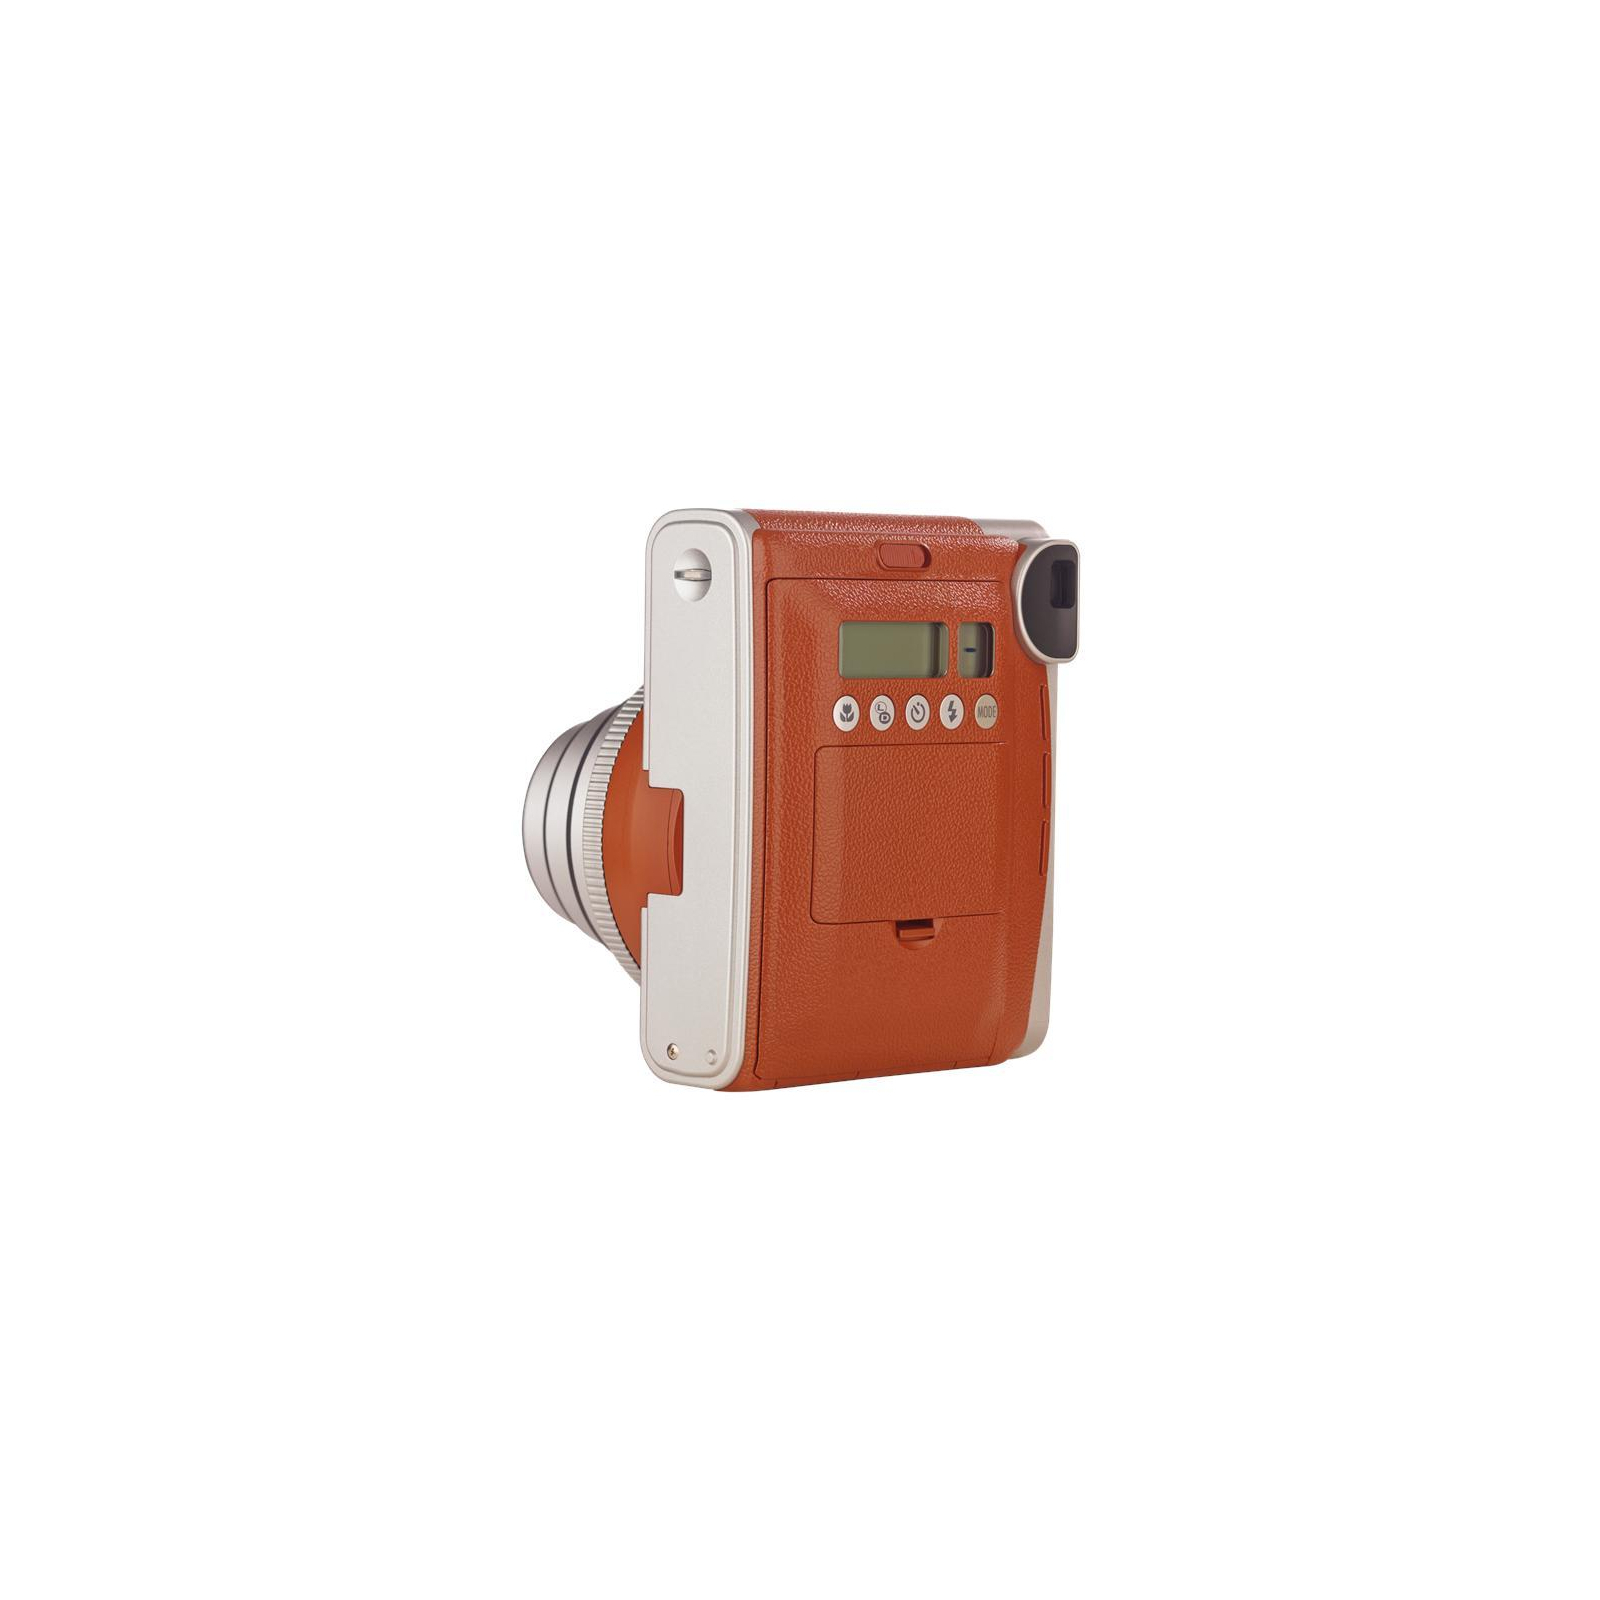 Камера моментальной печати Fujifilm Instax Mini 90 Instant camera Brown EX D (16423981) изображение 5